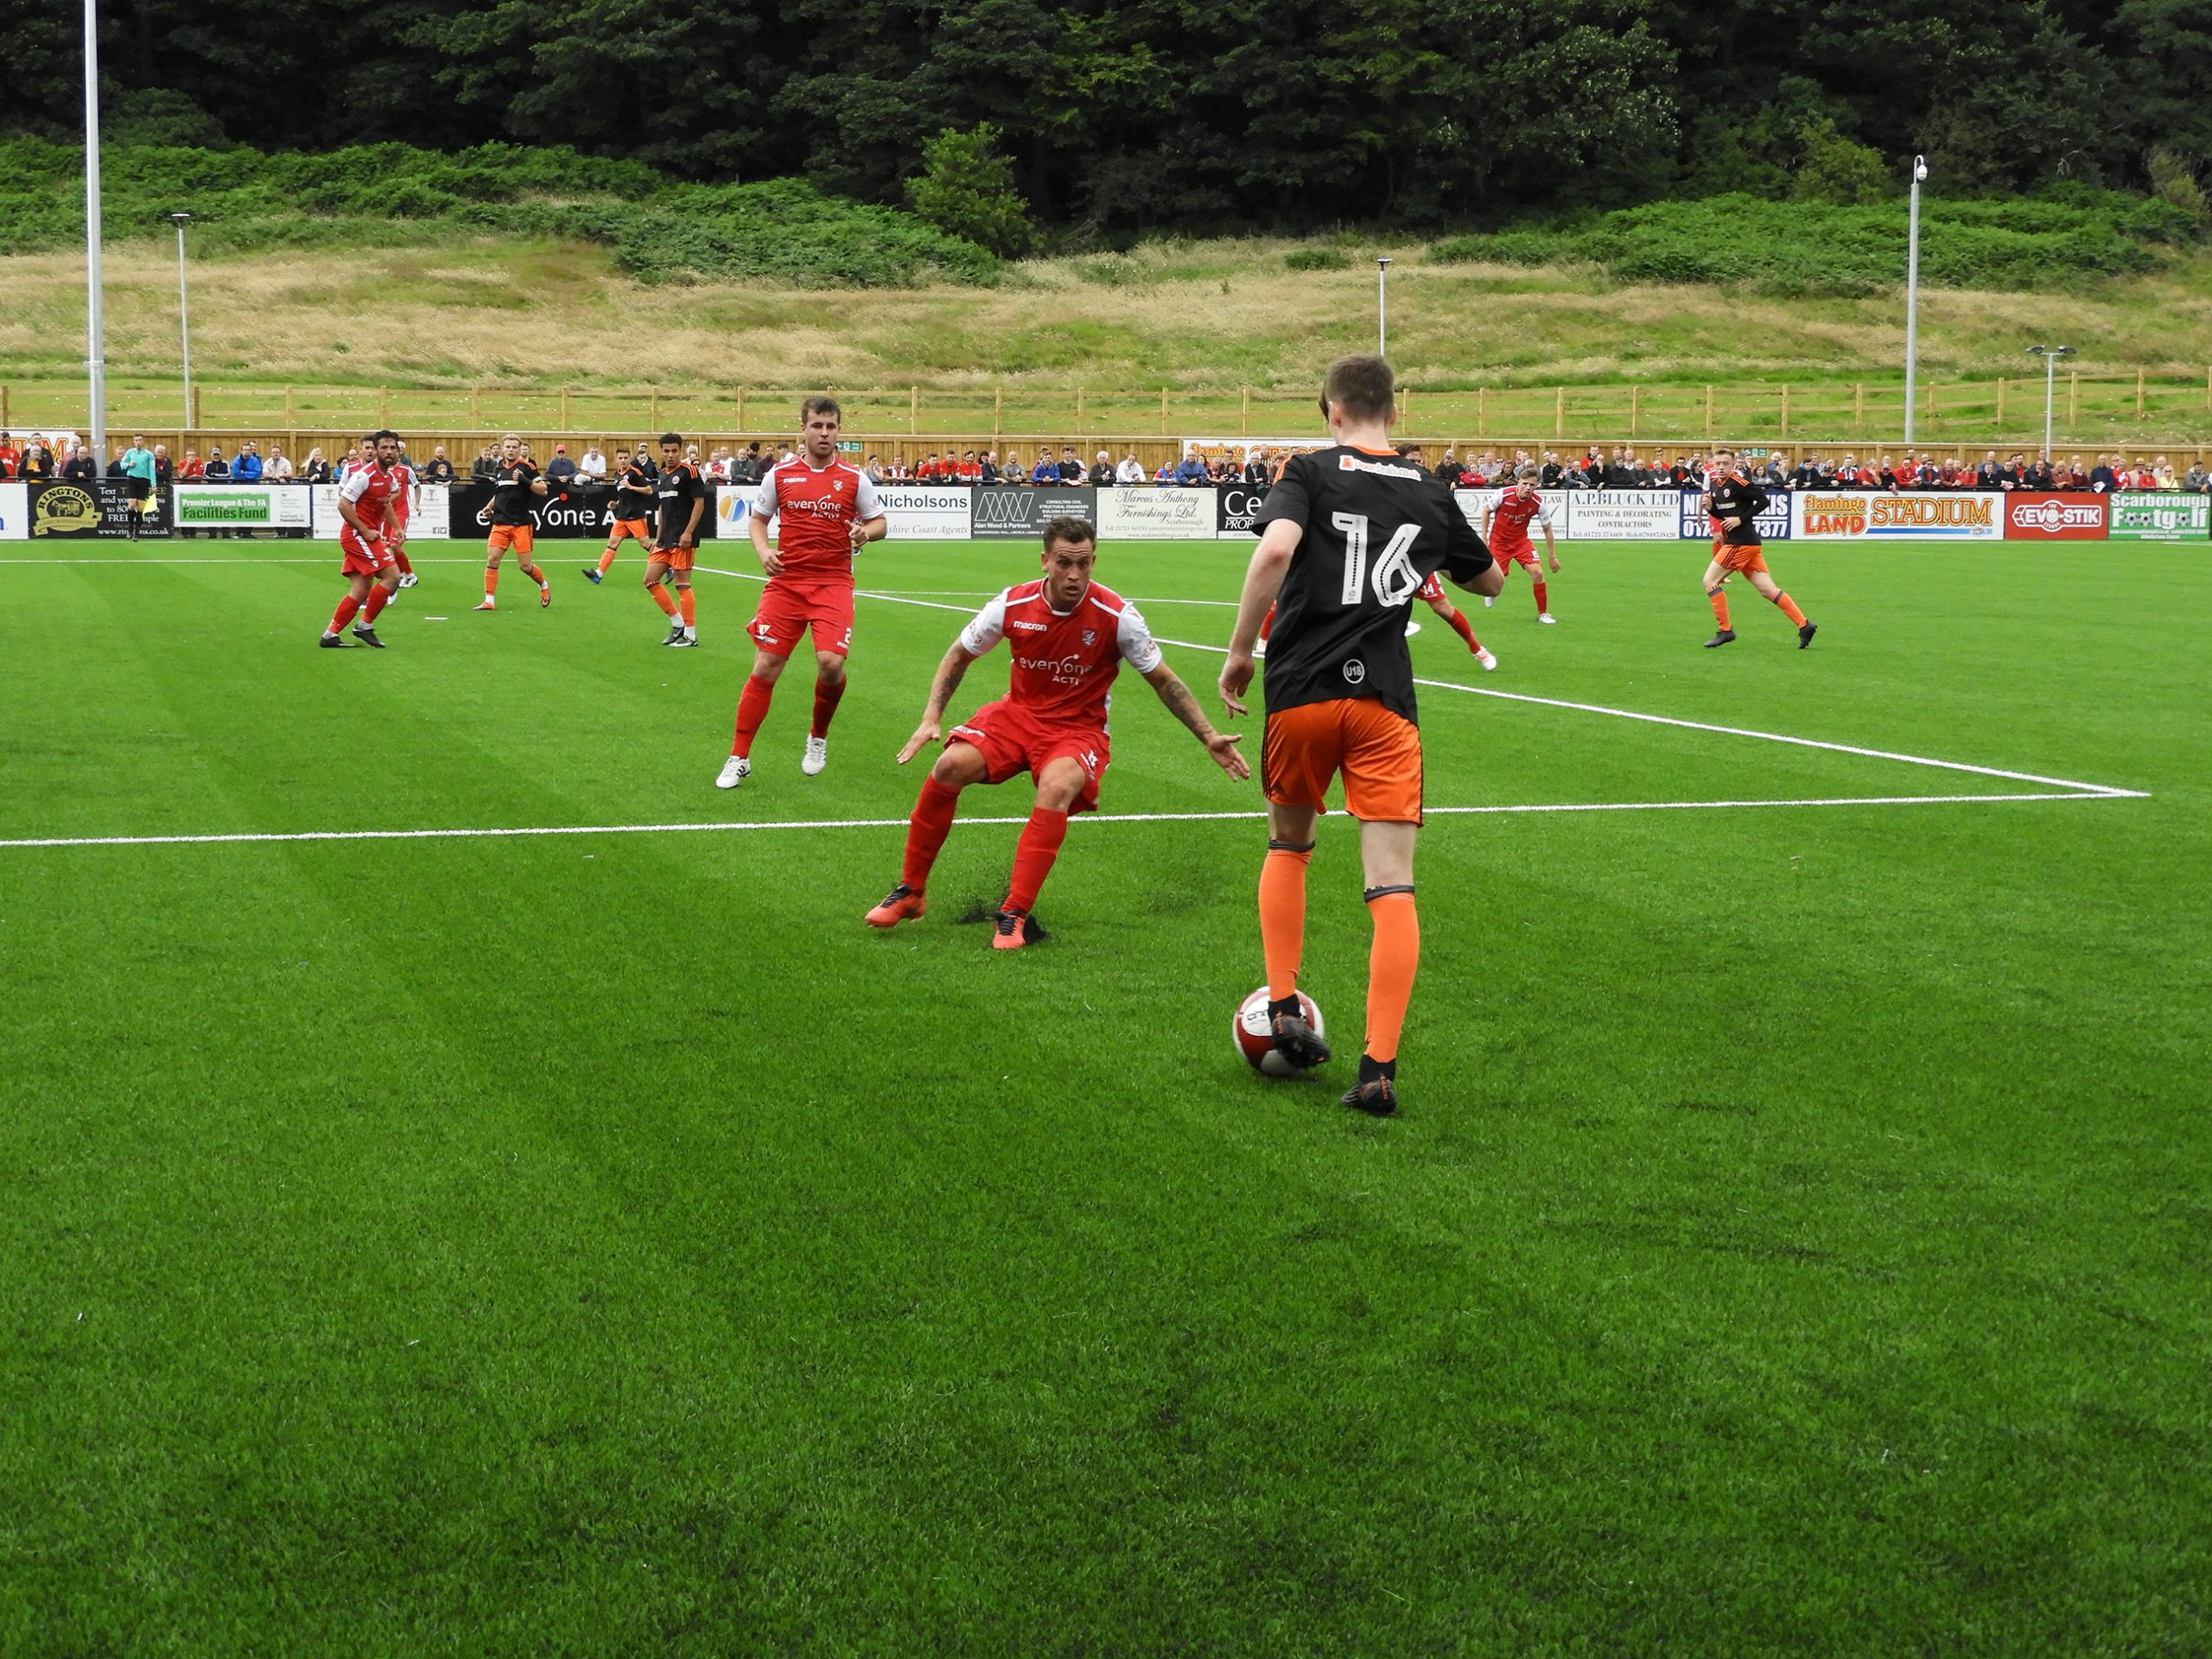 15/07/17 – Scarborough Athletic 1 – 4 Sheffield United U23 – Pre-season Friendly